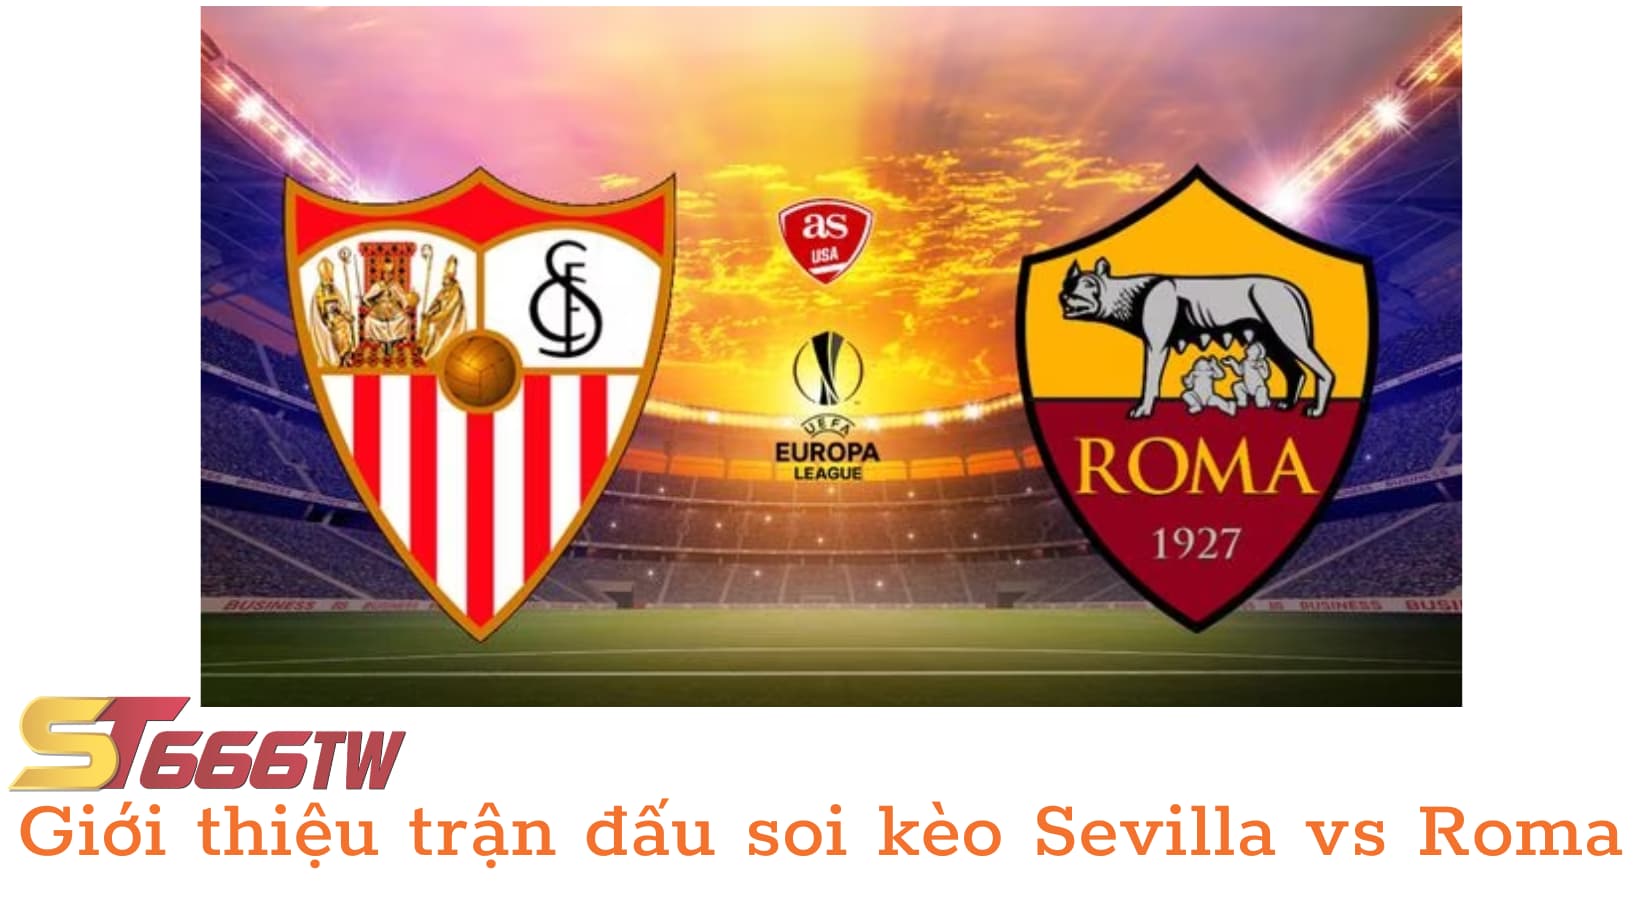 Trận đấu kịch tính giữa Sevilla và Roma